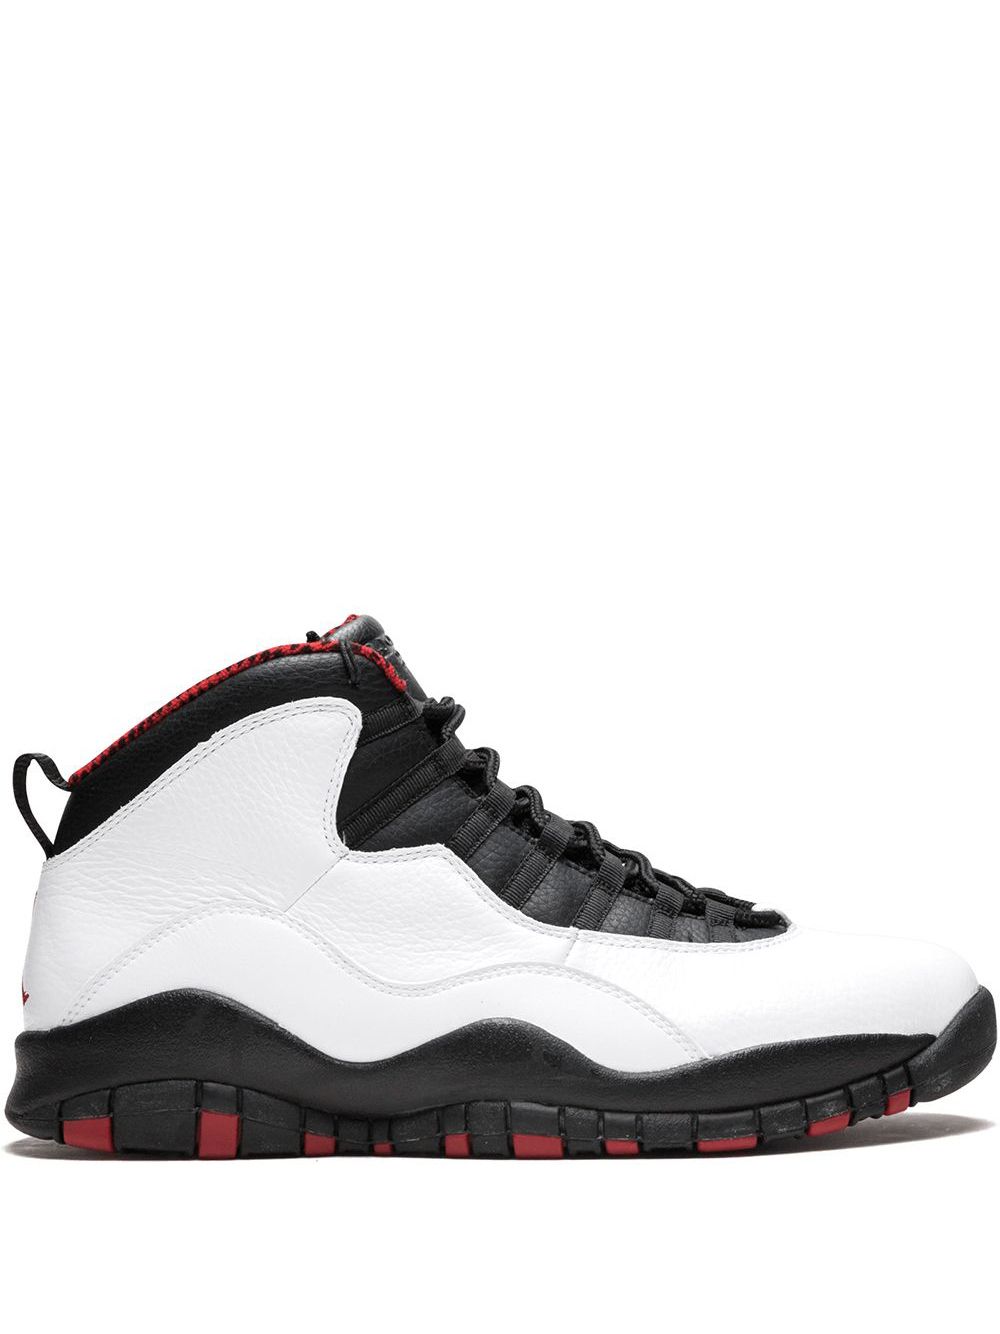 Jordan Air Jordan 10 Retro "Chicago" sneakers - White